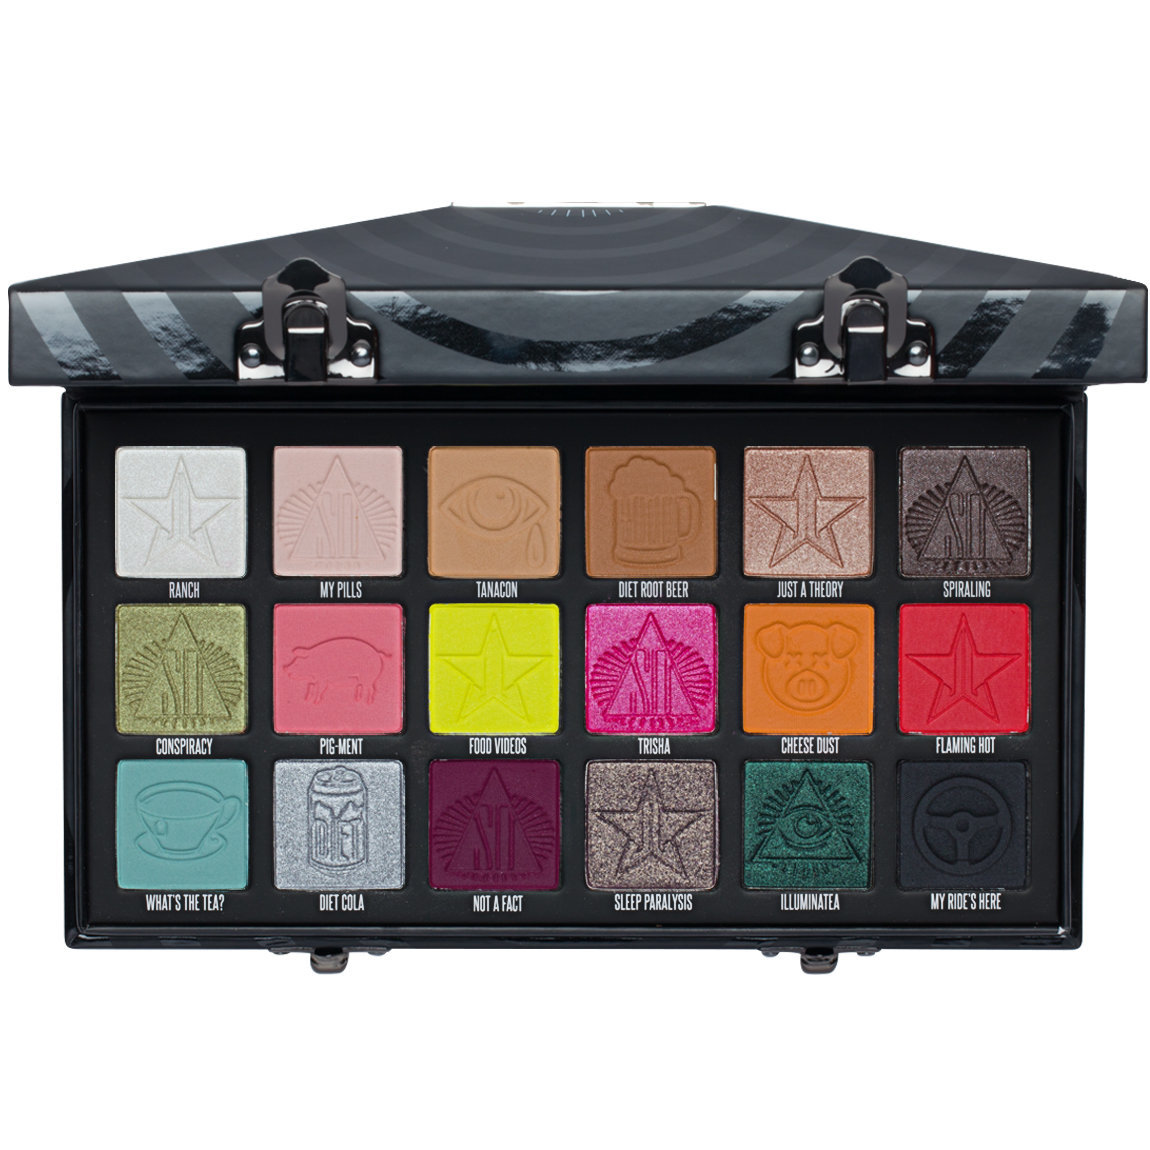 Jeffree Star Cosmetics Conspiracy Palette | Beautylish1150 x 1150